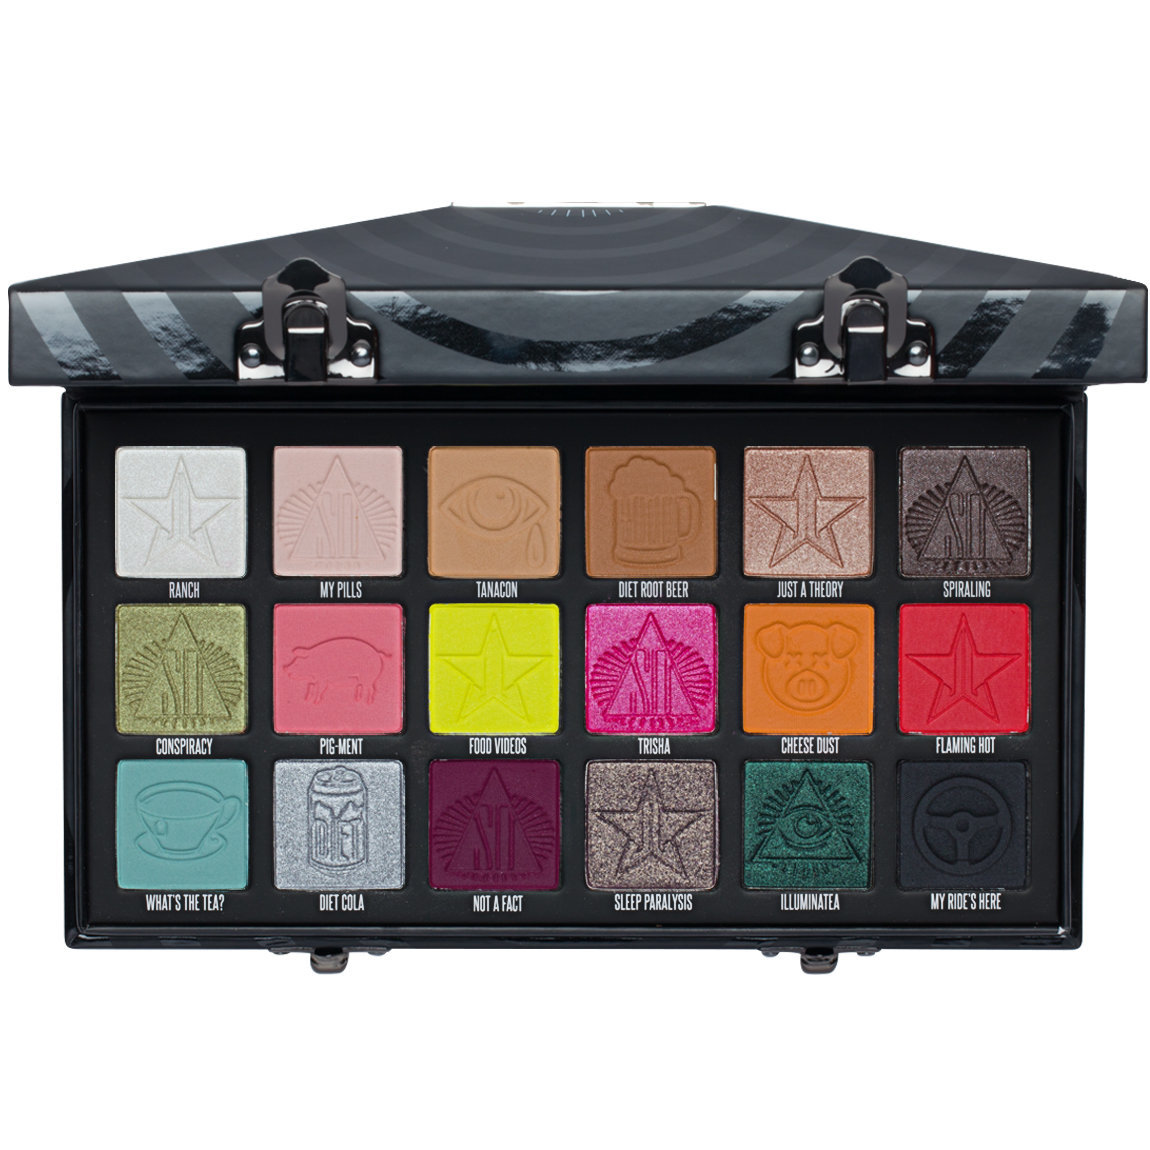 Jeffree Star Cosmetics Conspiracy Palette | Beautylish1150 x 1150